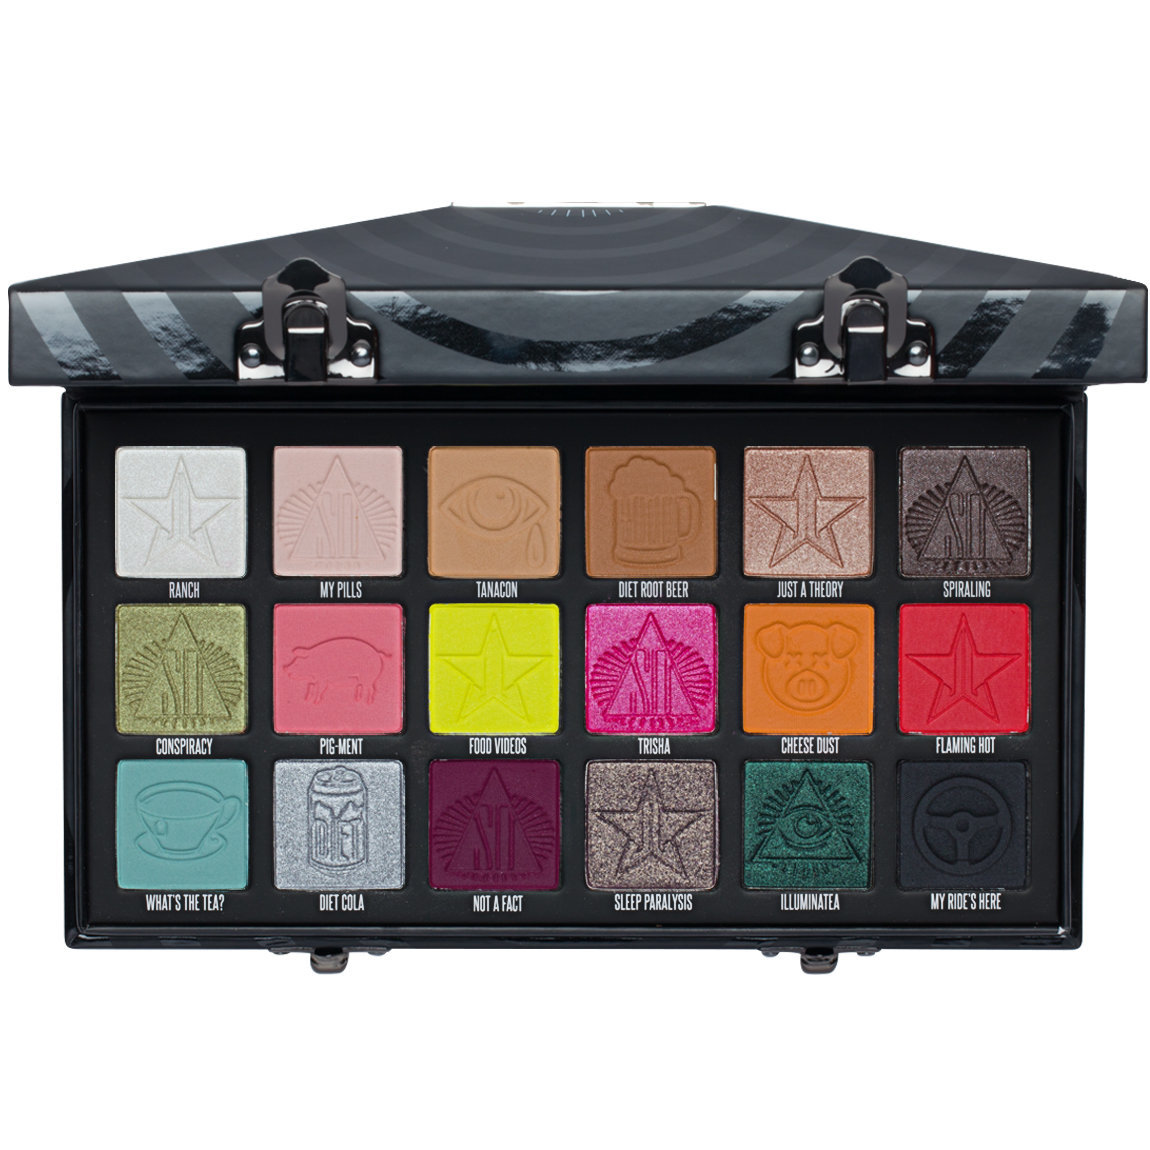 Jeffree Star Cosmetics Conspiracy Palette | Beautylish1150 x 1150